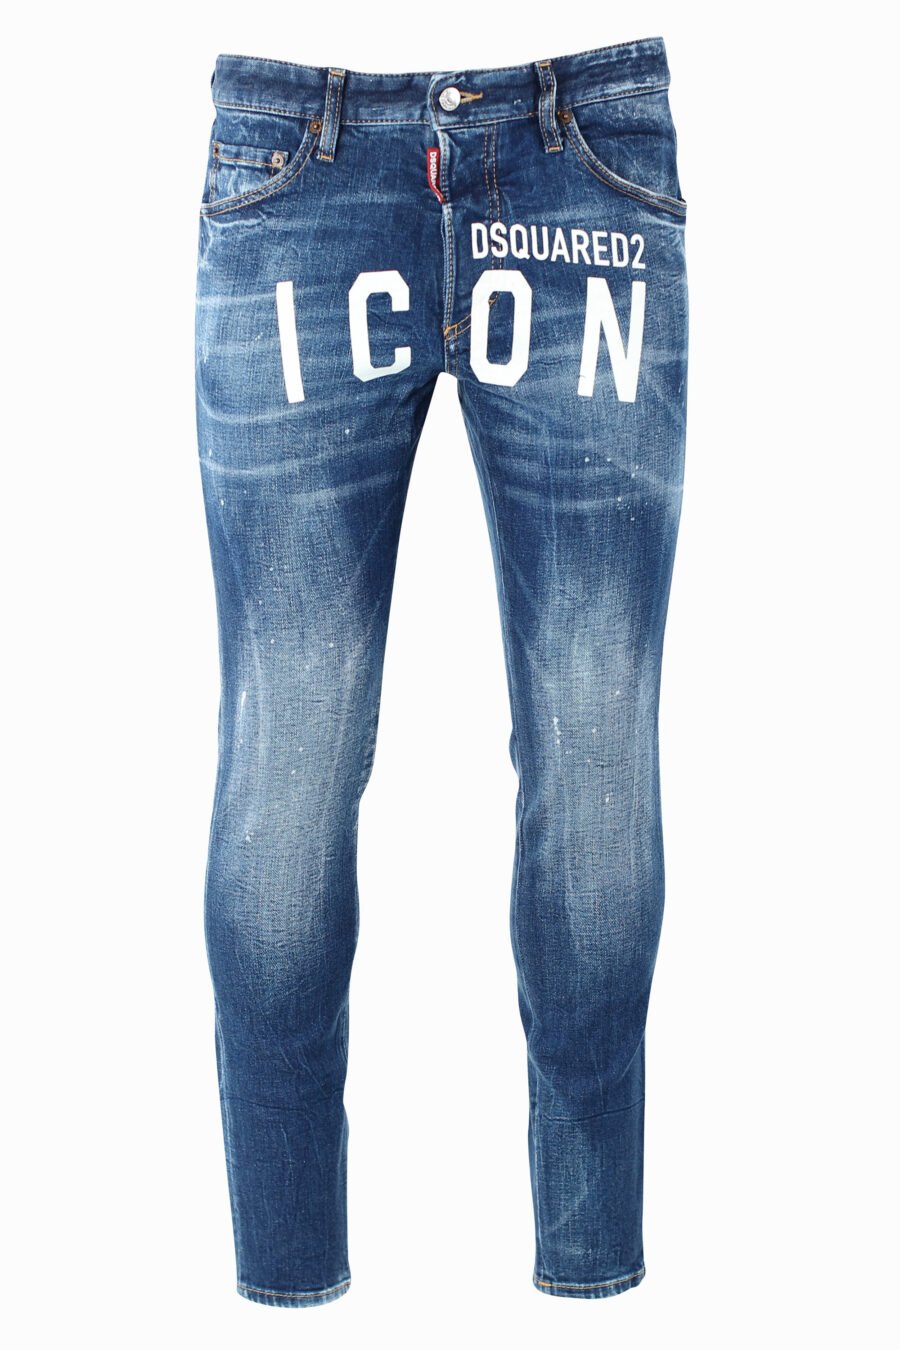 Pantalón vaquero "Skinny Dan Jean" azul con maxilogo "icon" frontal - IMG 0978